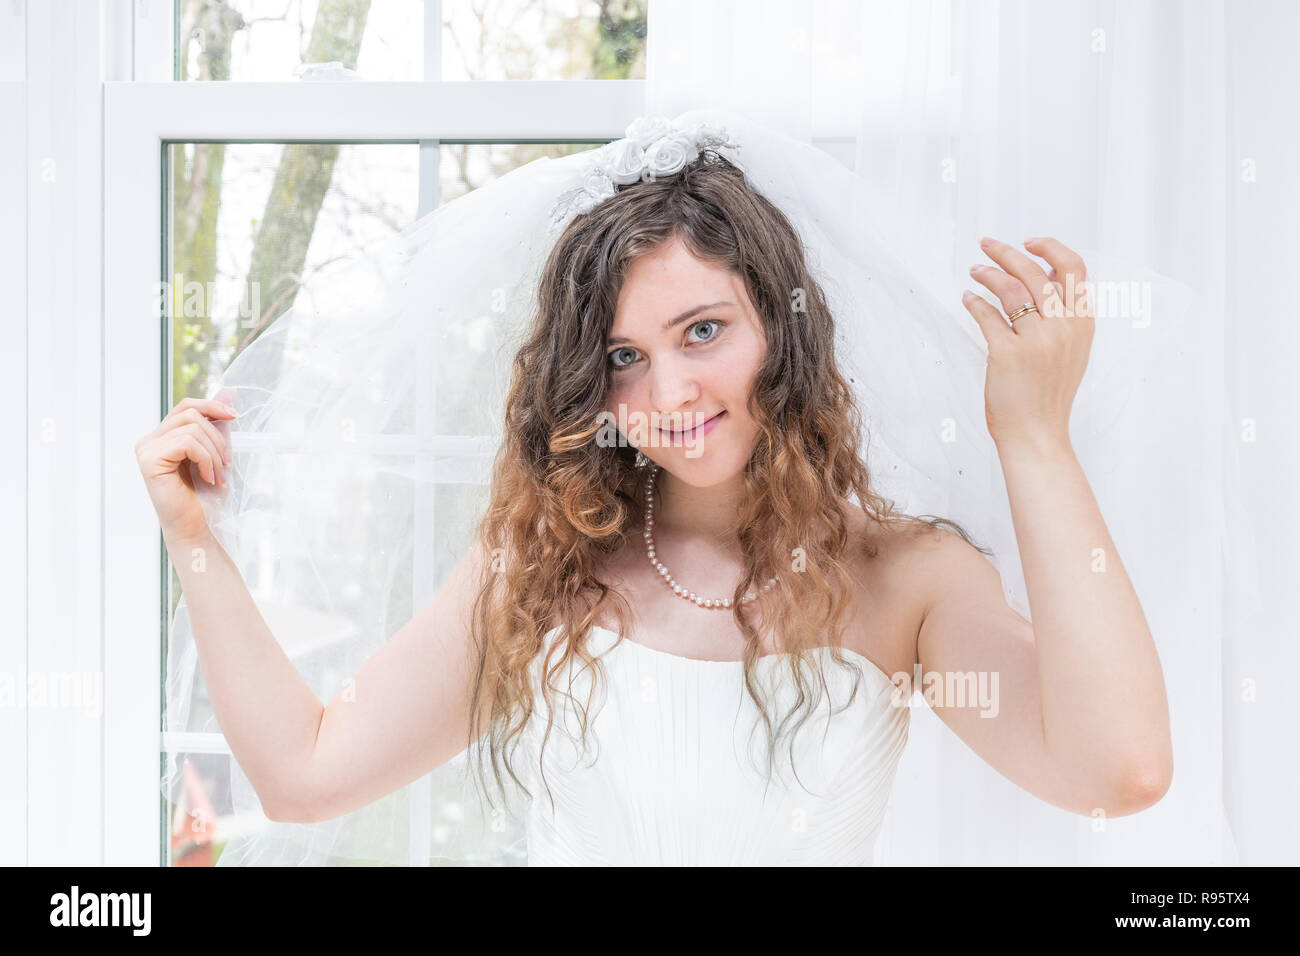 Closeup Portrait von jungen weiblichen Person, Frau, Braut im Brautkleid, Schleier, Hände, Gesicht, Perlenkette, Fenster, weiße Vorhänge, Stockfoto